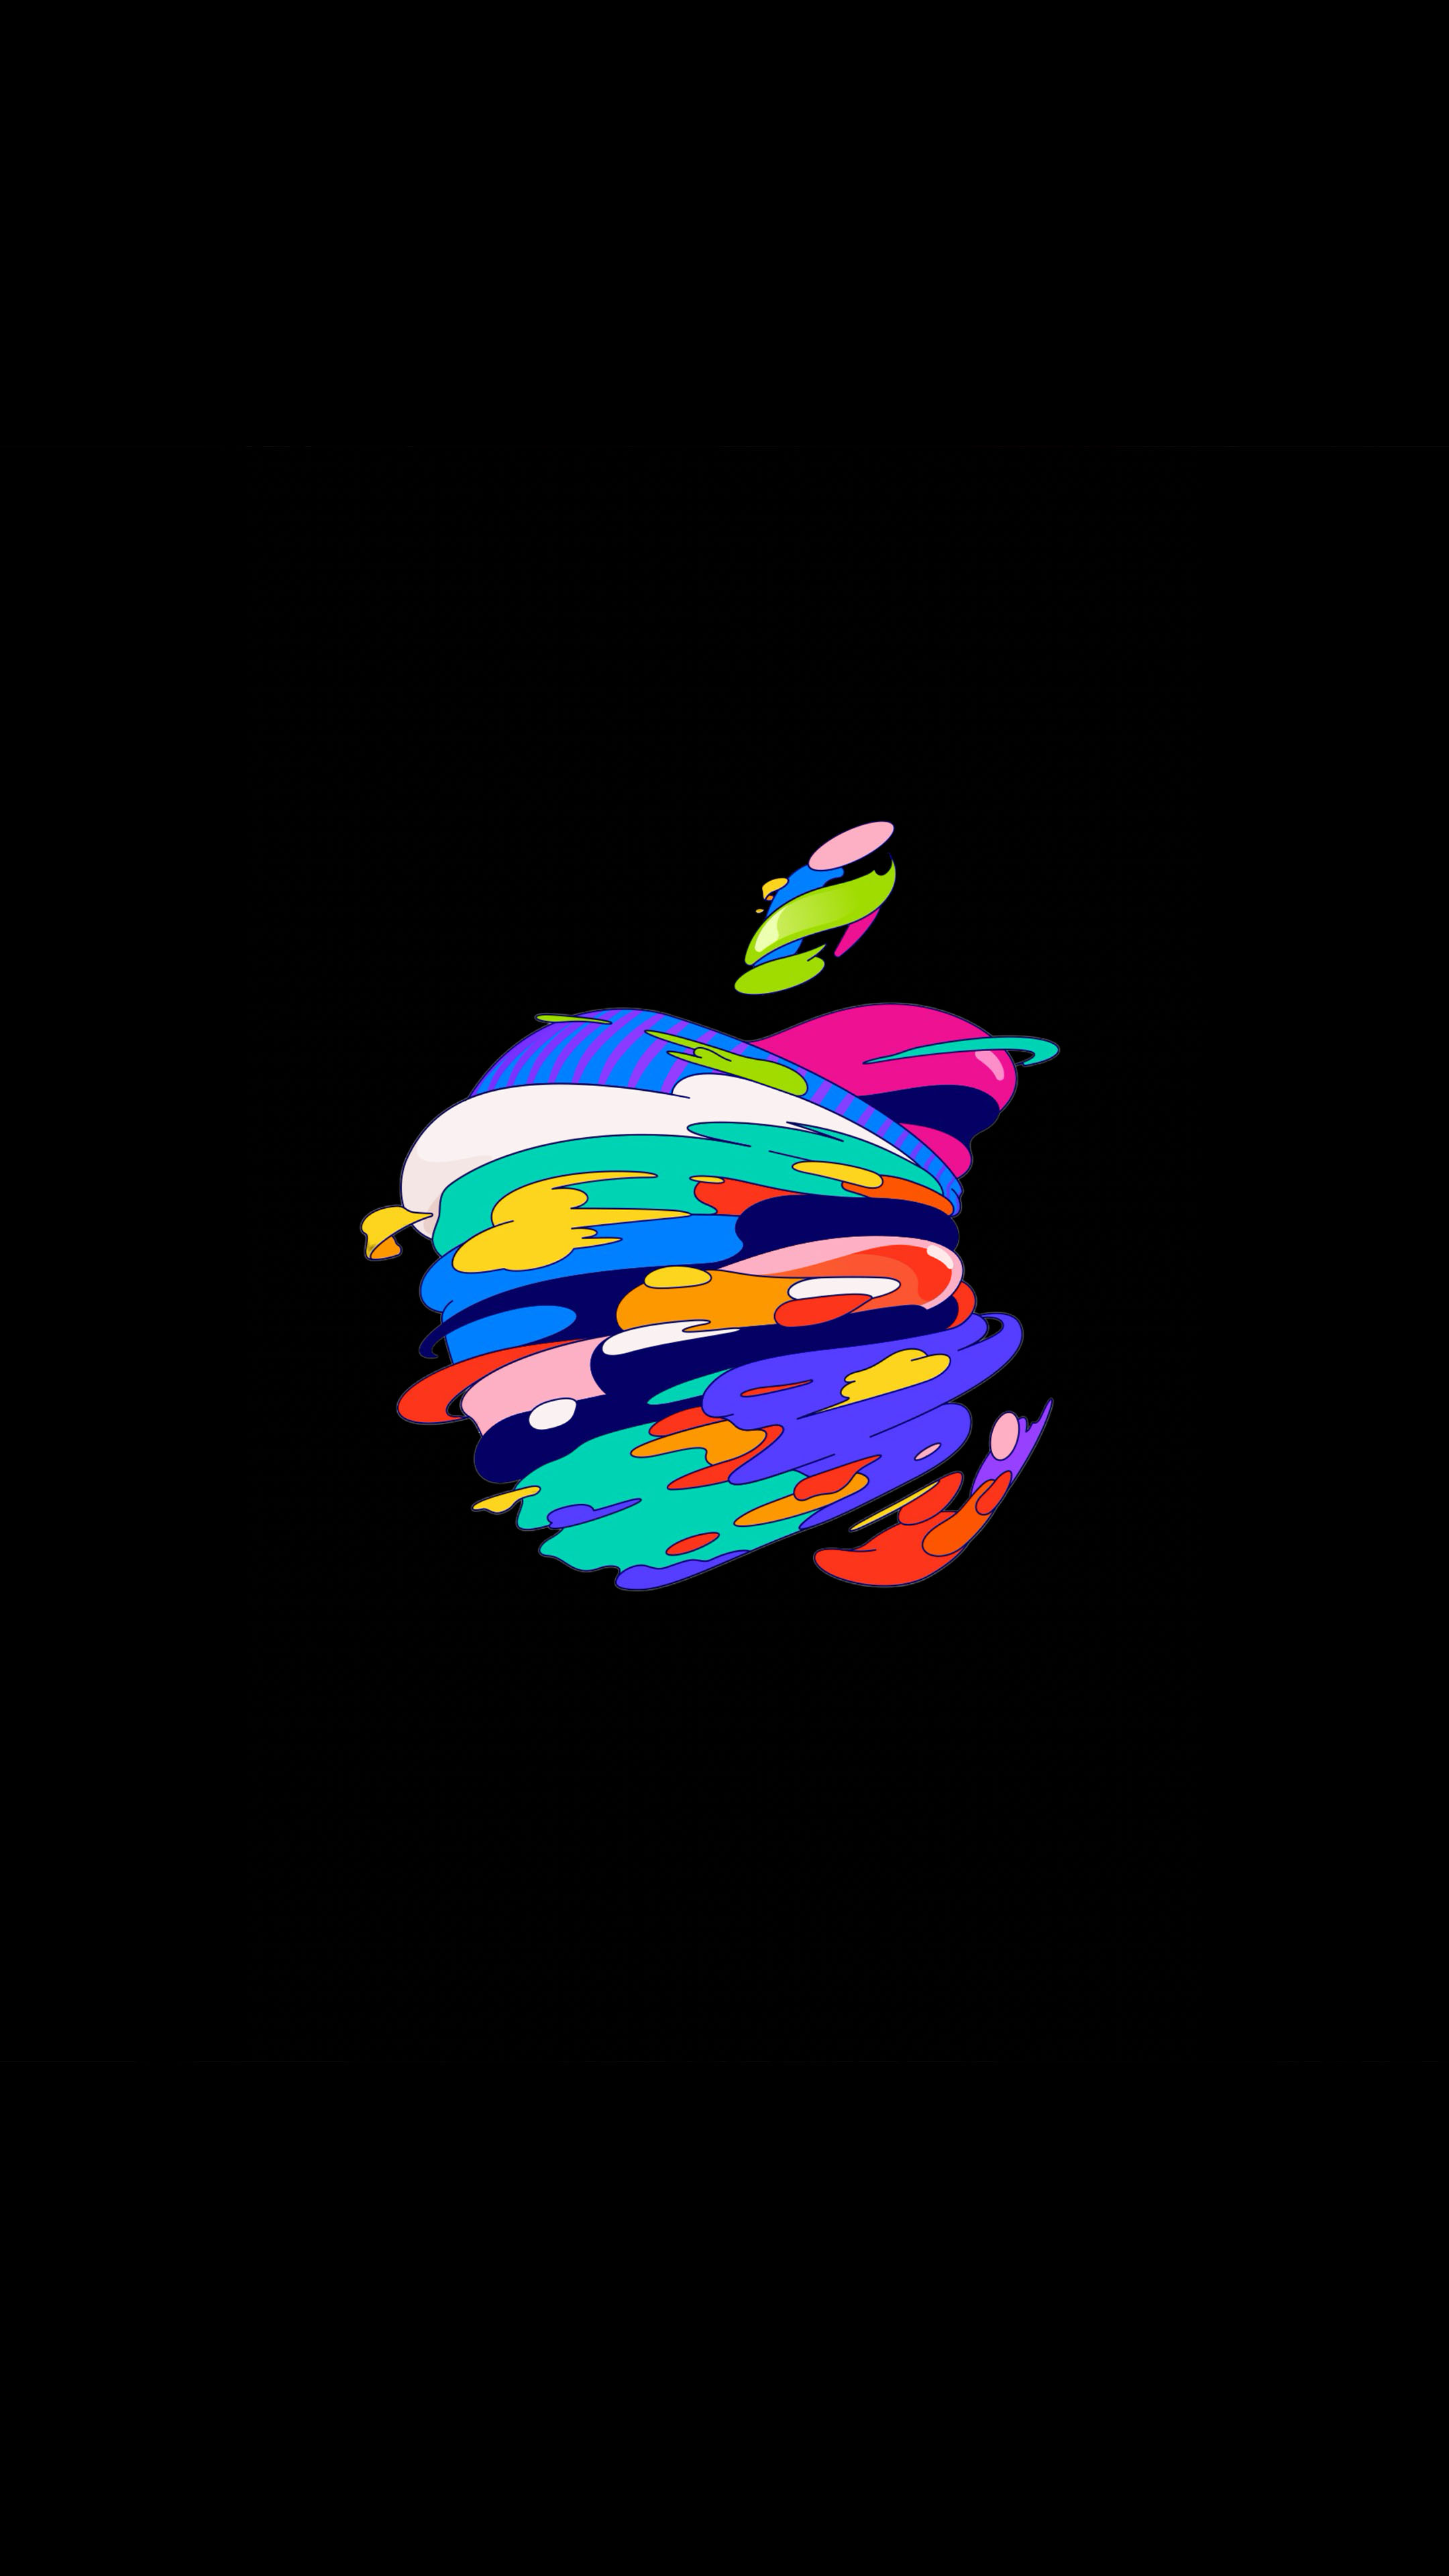 Bạn đã từng tò mò về logo táo màu sắc và ý nghĩa của nó chưa? Để được giải đáp, hãy xem ngay hình ảnh về logo táo này nhé!